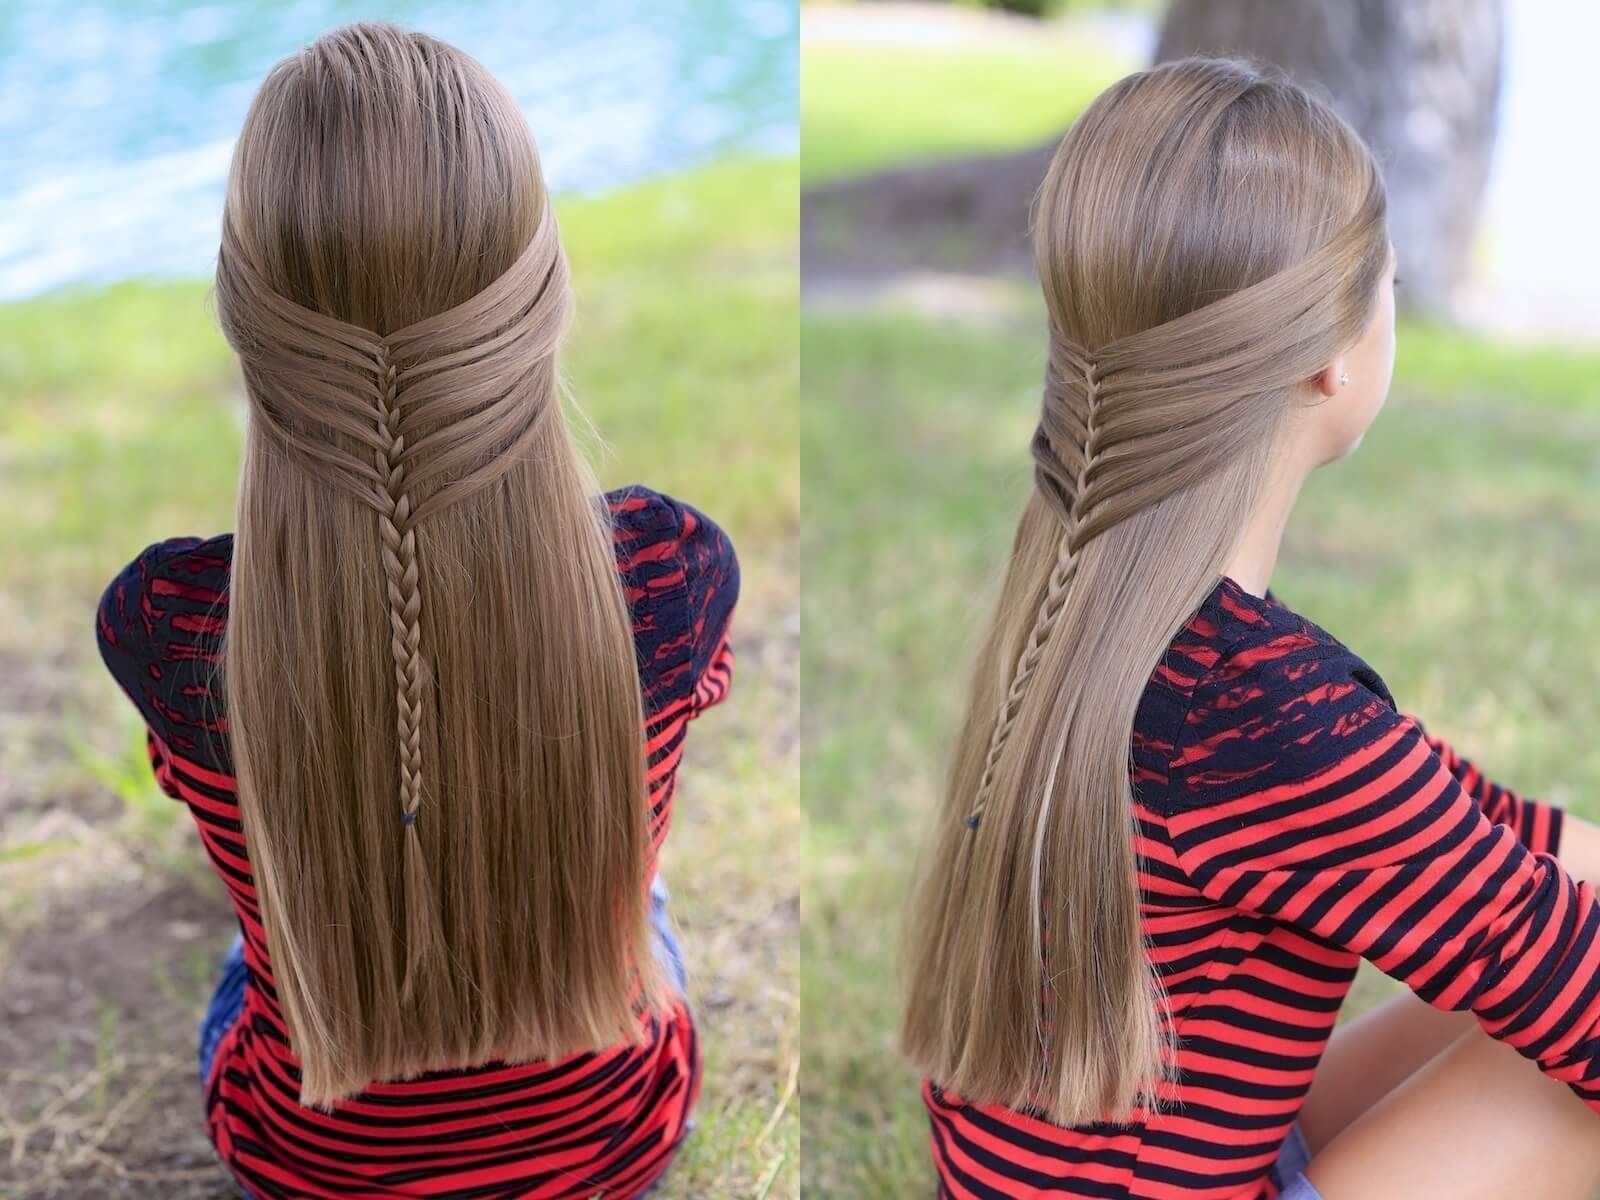 Прически в школу резинками. Причёски для девочек на длинные волосы. Красивые причёски для девочек на длинные волосы. Причёски для девочек на длинные волосы в школу. Несложные прически на длинные волосы для девочек.